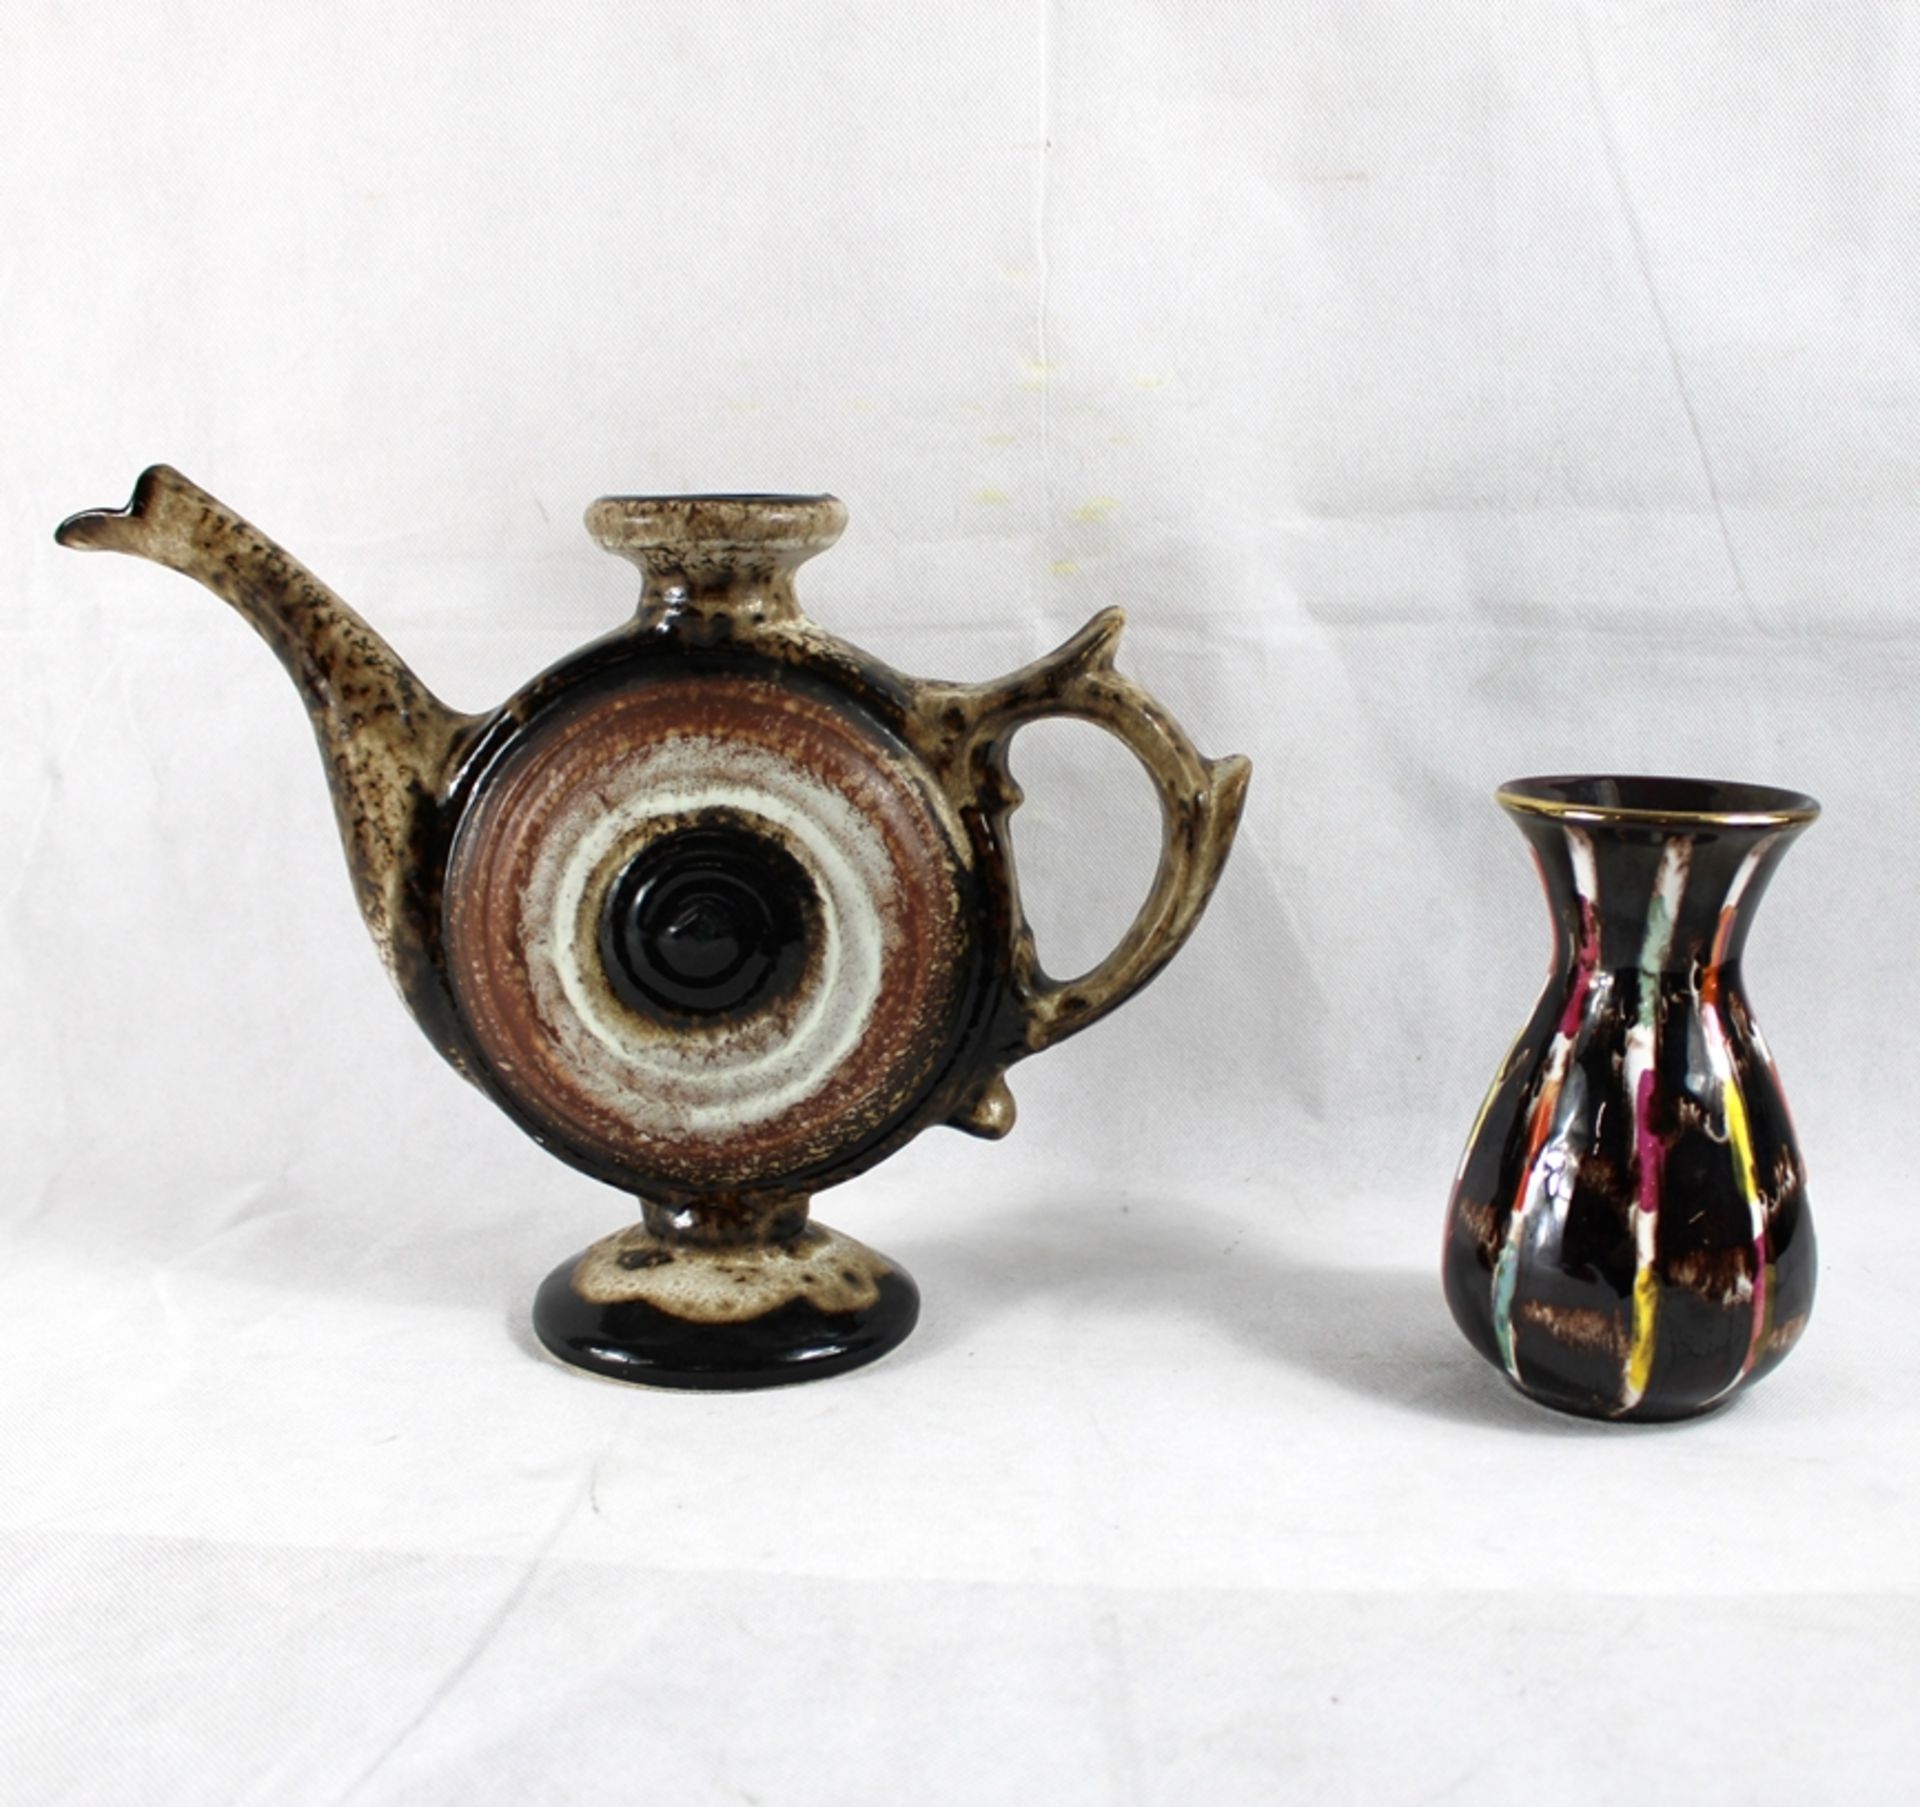 Keramik 60/70er Jahre Konvolut 5-teilig, kl. Beschädigung vereinzelt möglich - Bild 3 aus 3